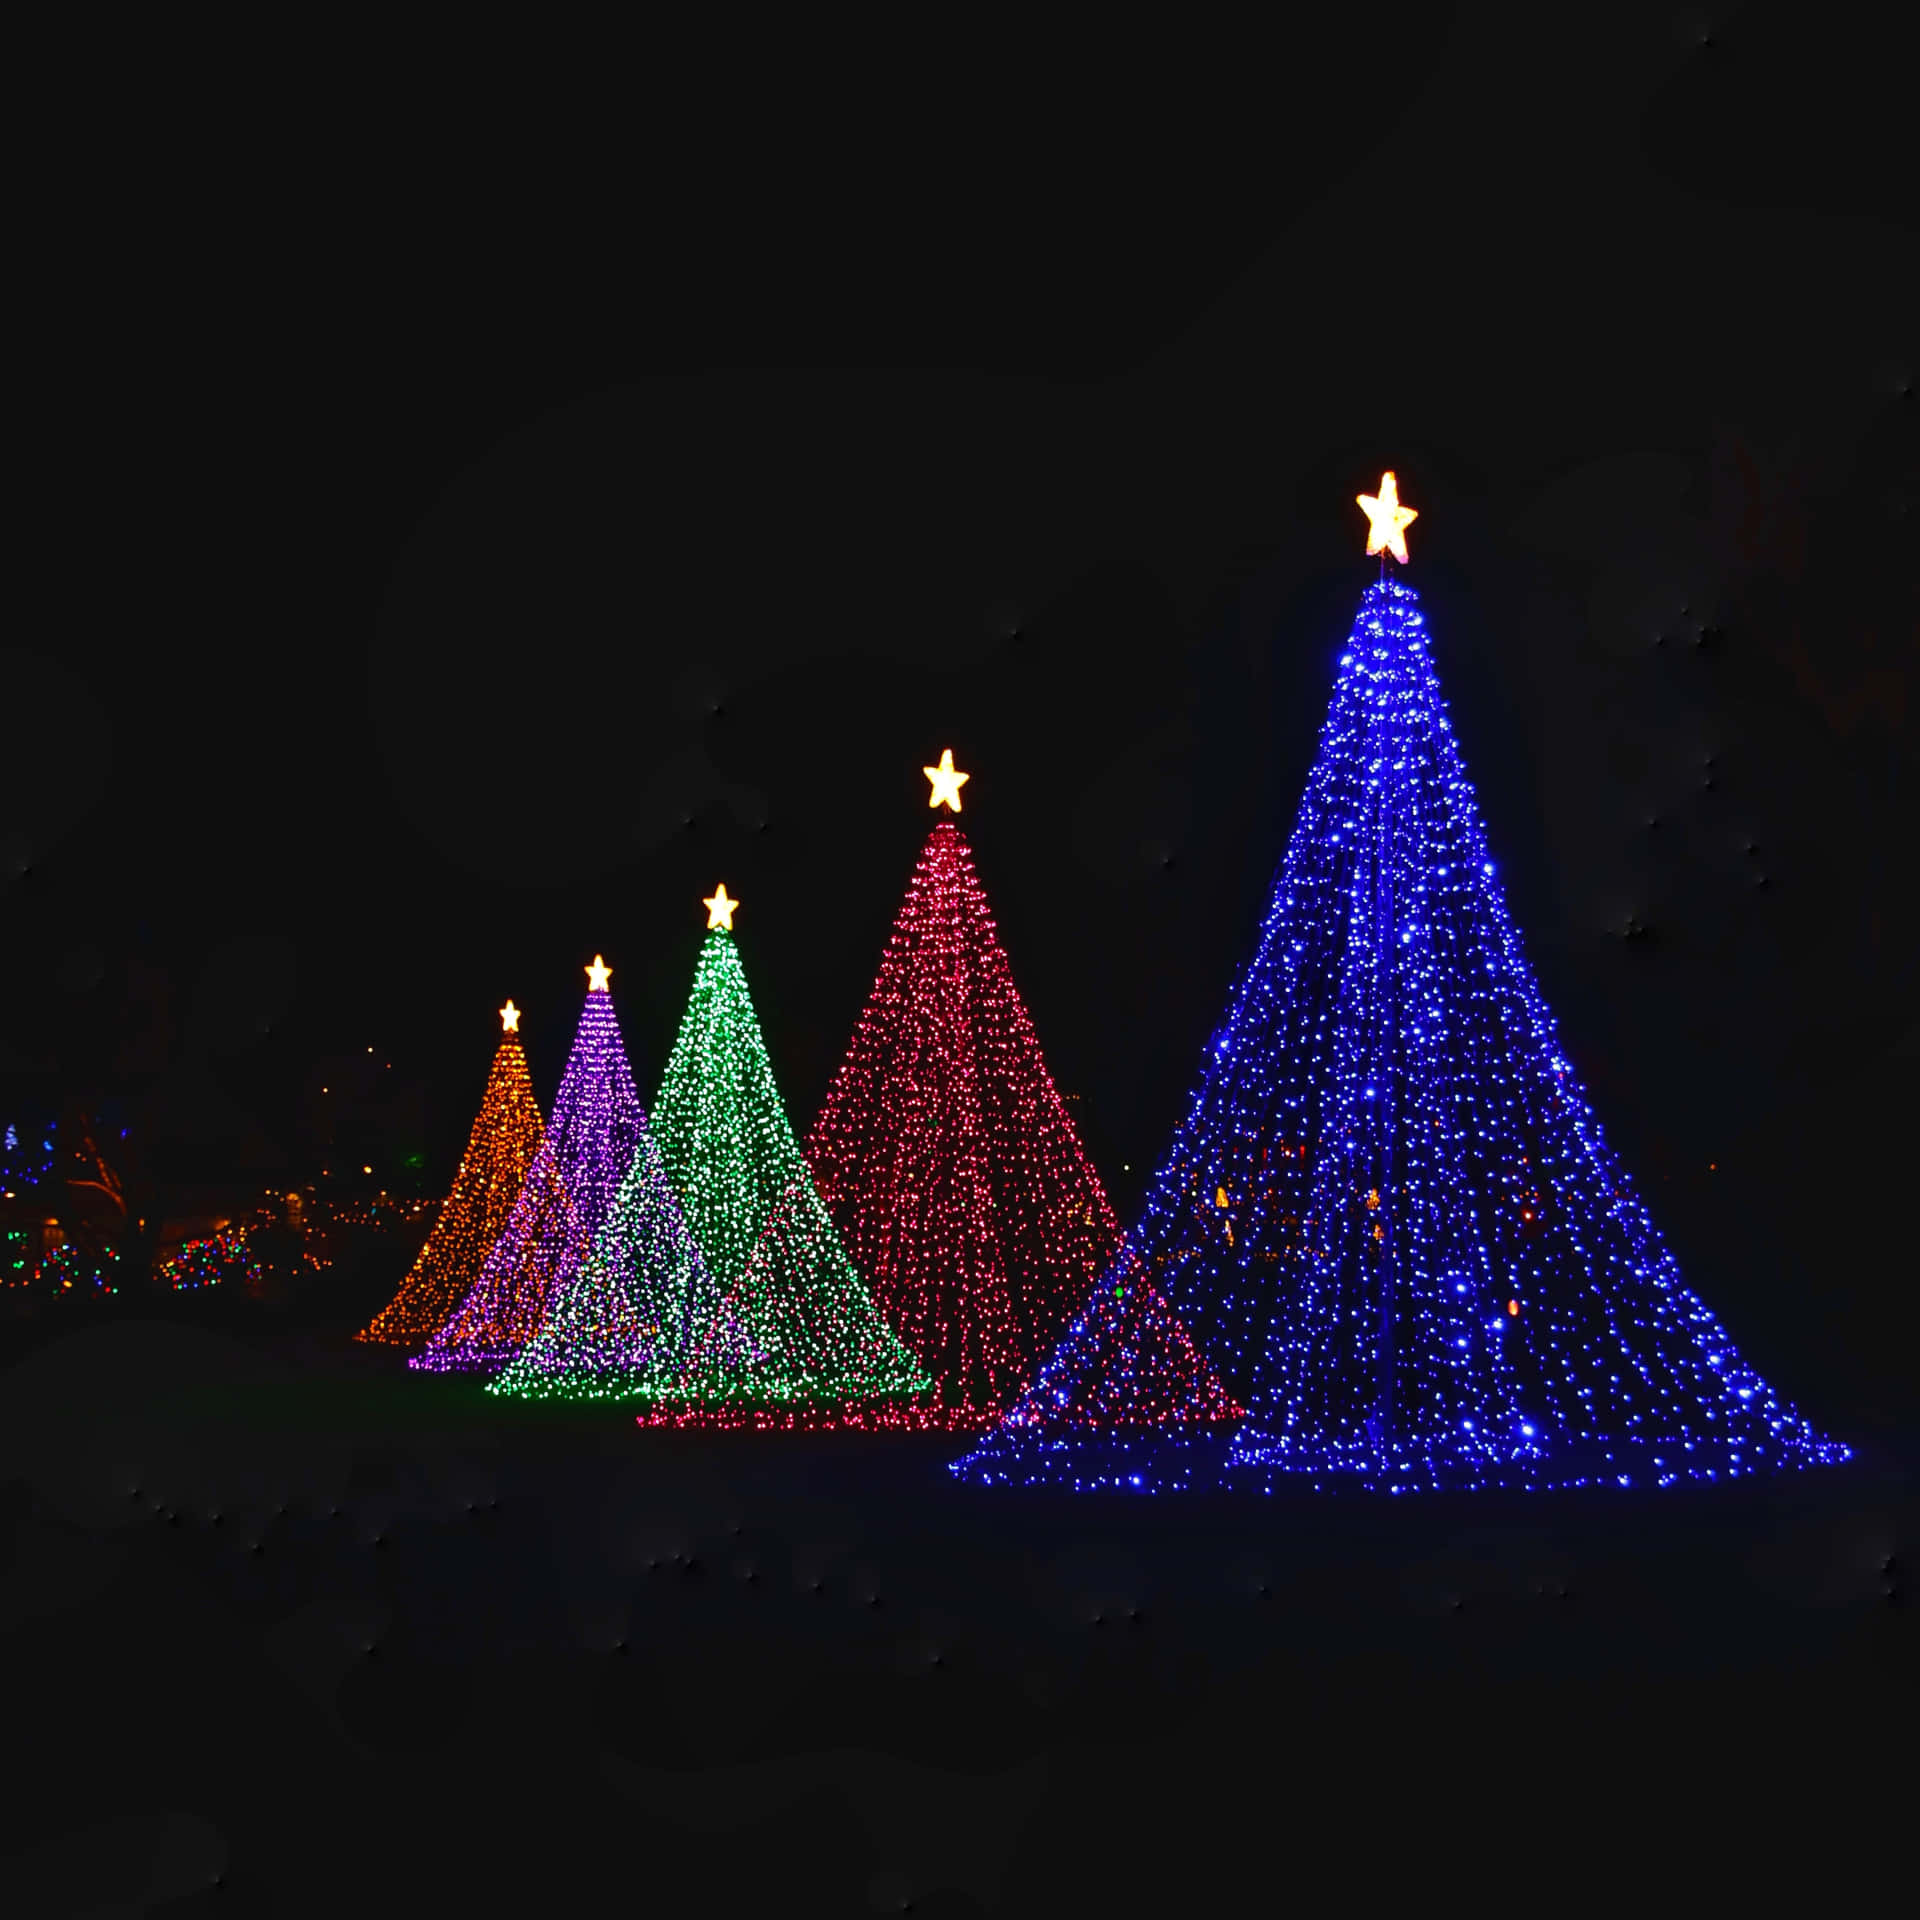 Illuminala Tua Casa Questo Natale Con Luci Vibranti Che Mettono In Risalto La Magia Della Stagione.